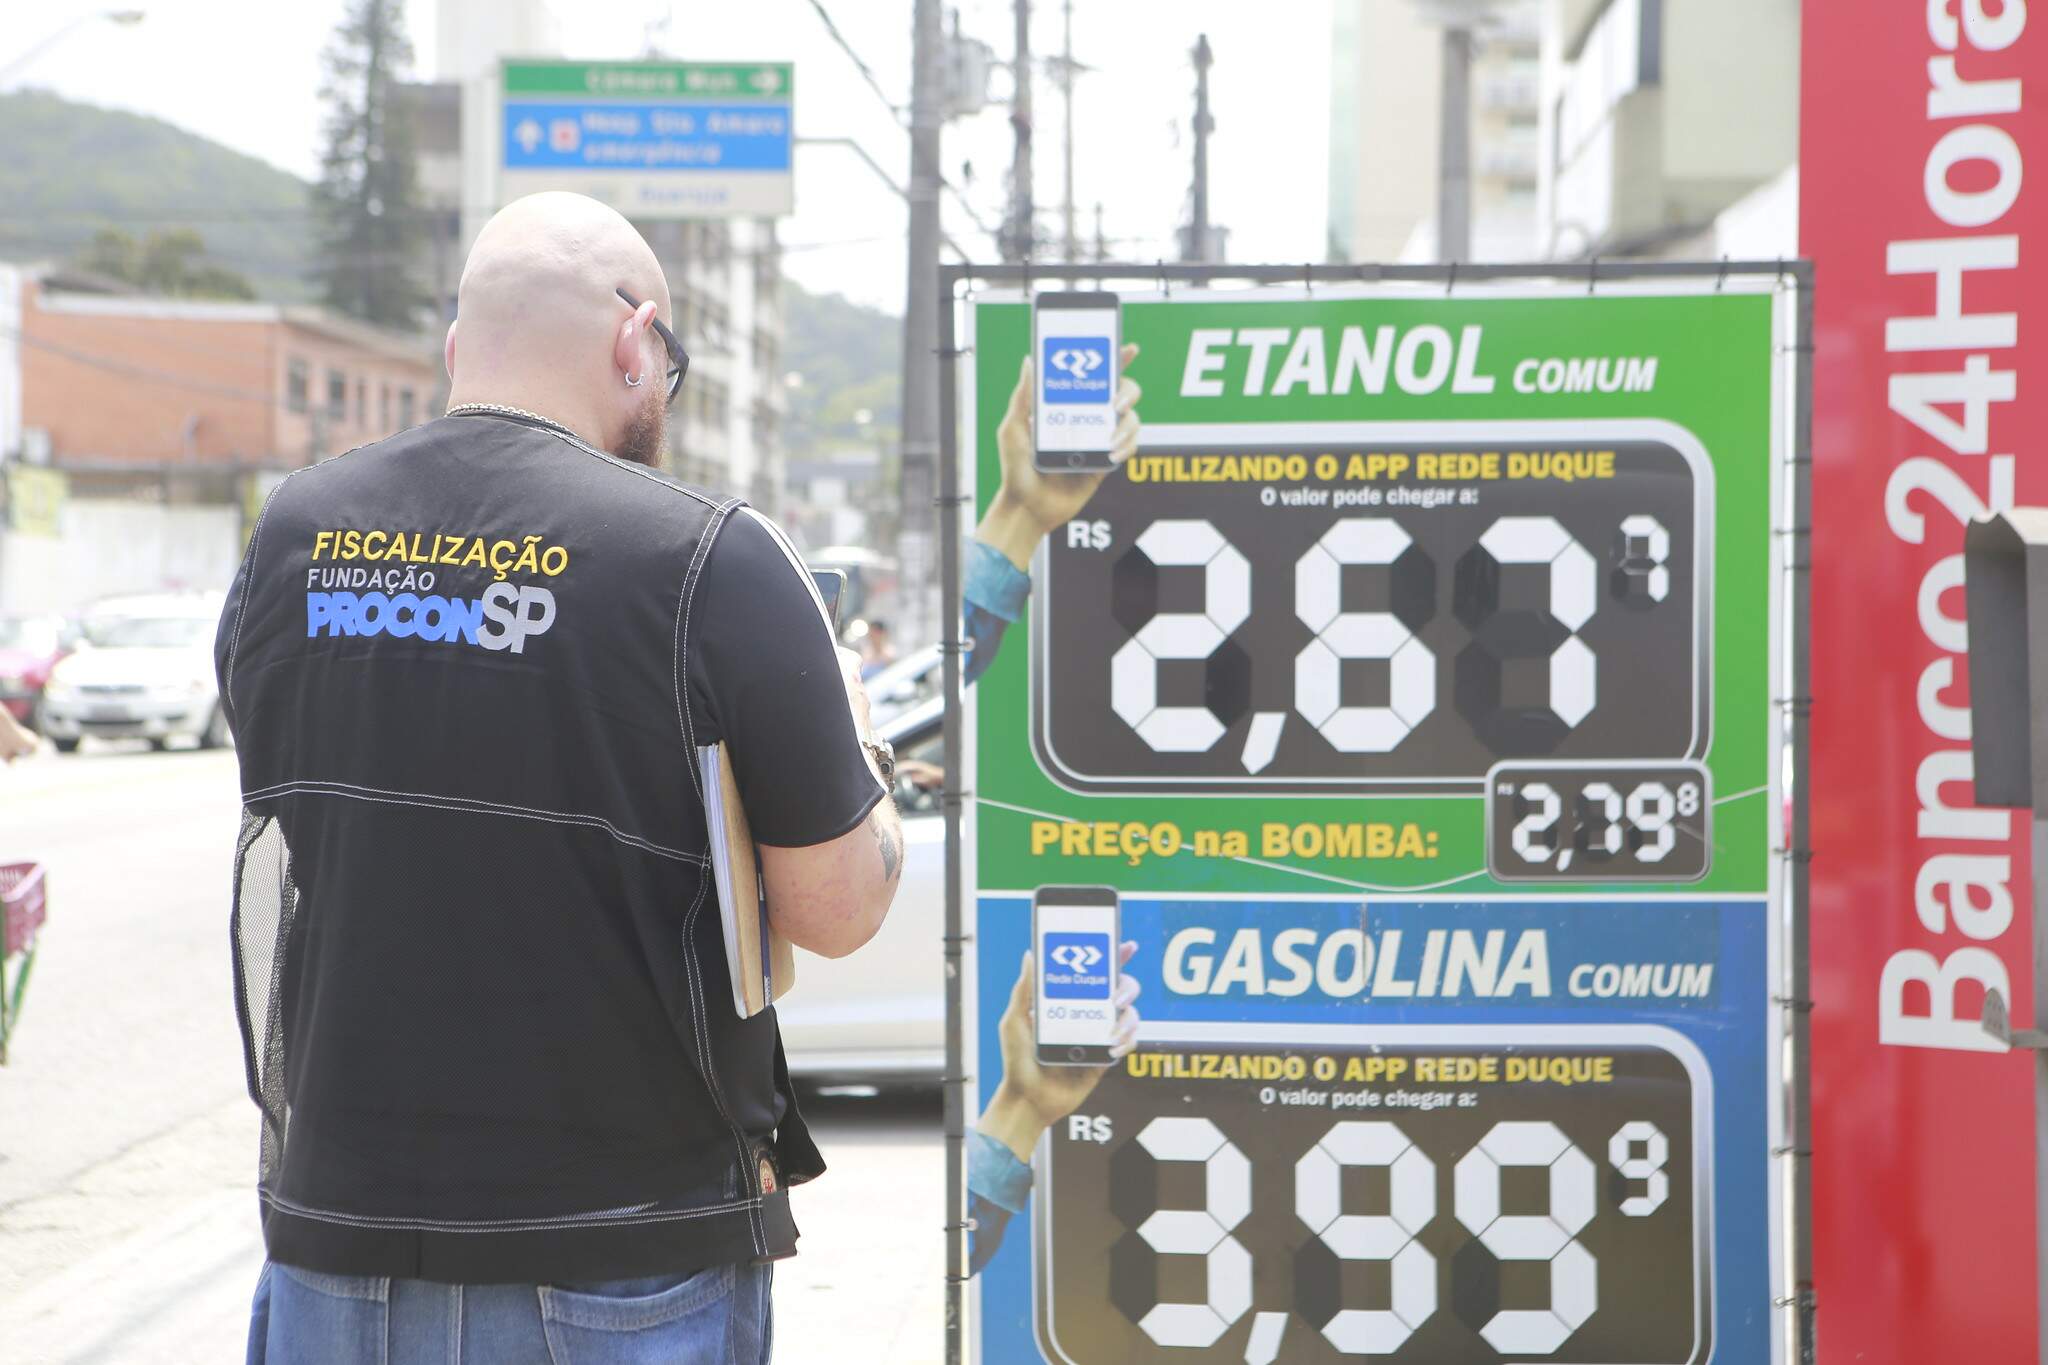 Procon notificou posto de combustíveis por irregularidades em Guarujá